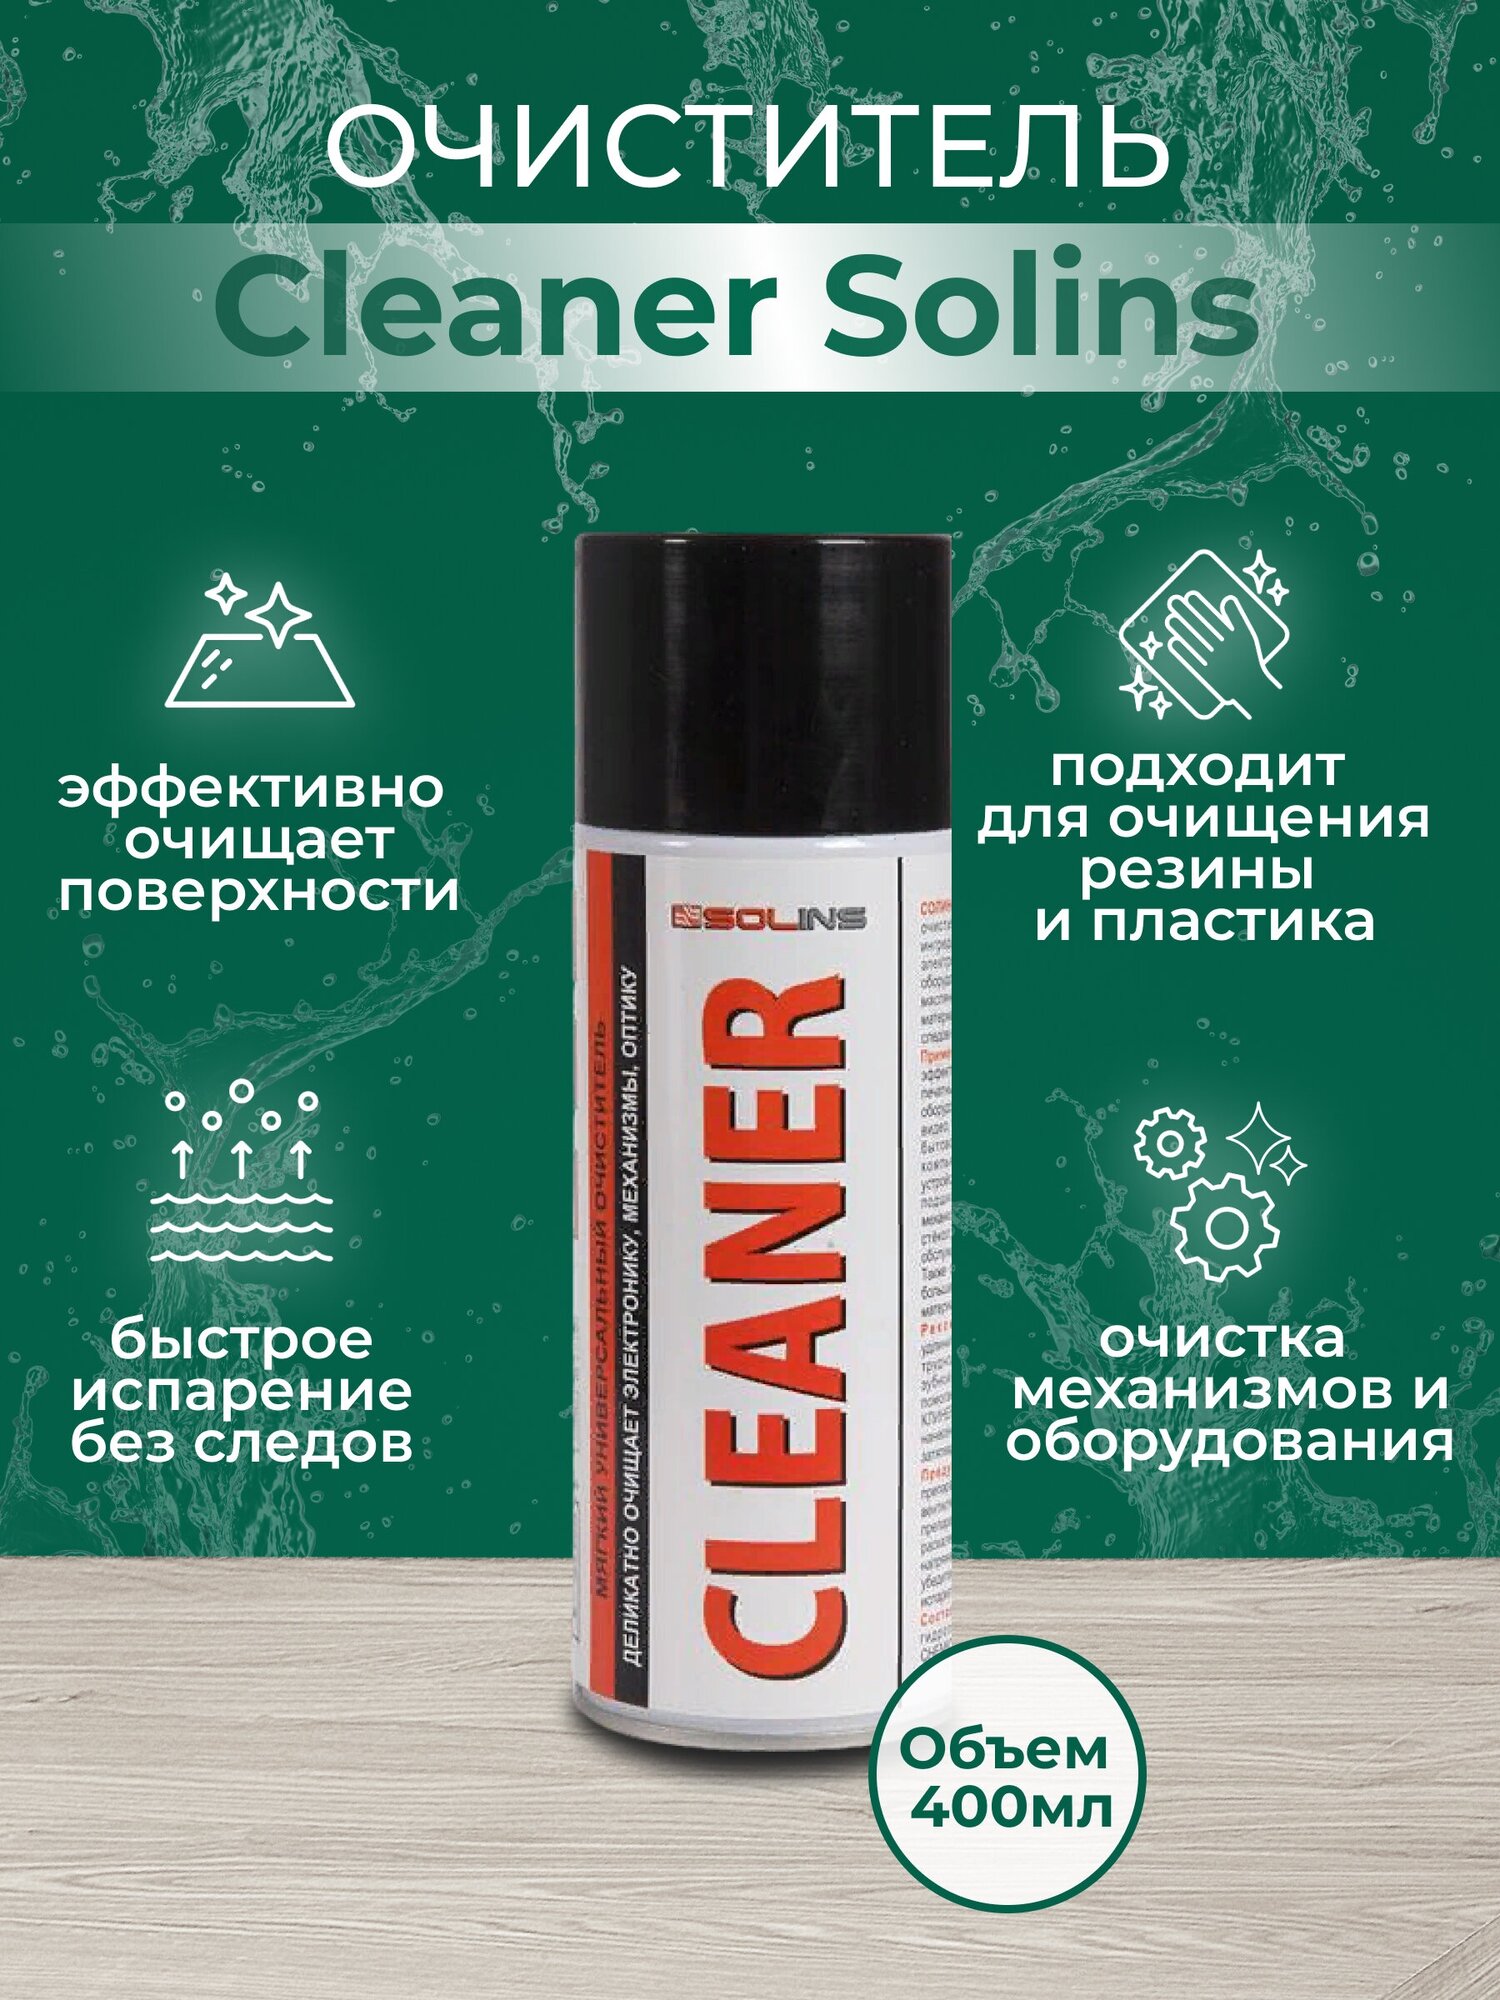 Очиститель Cleaner Solins, объем 400 мл